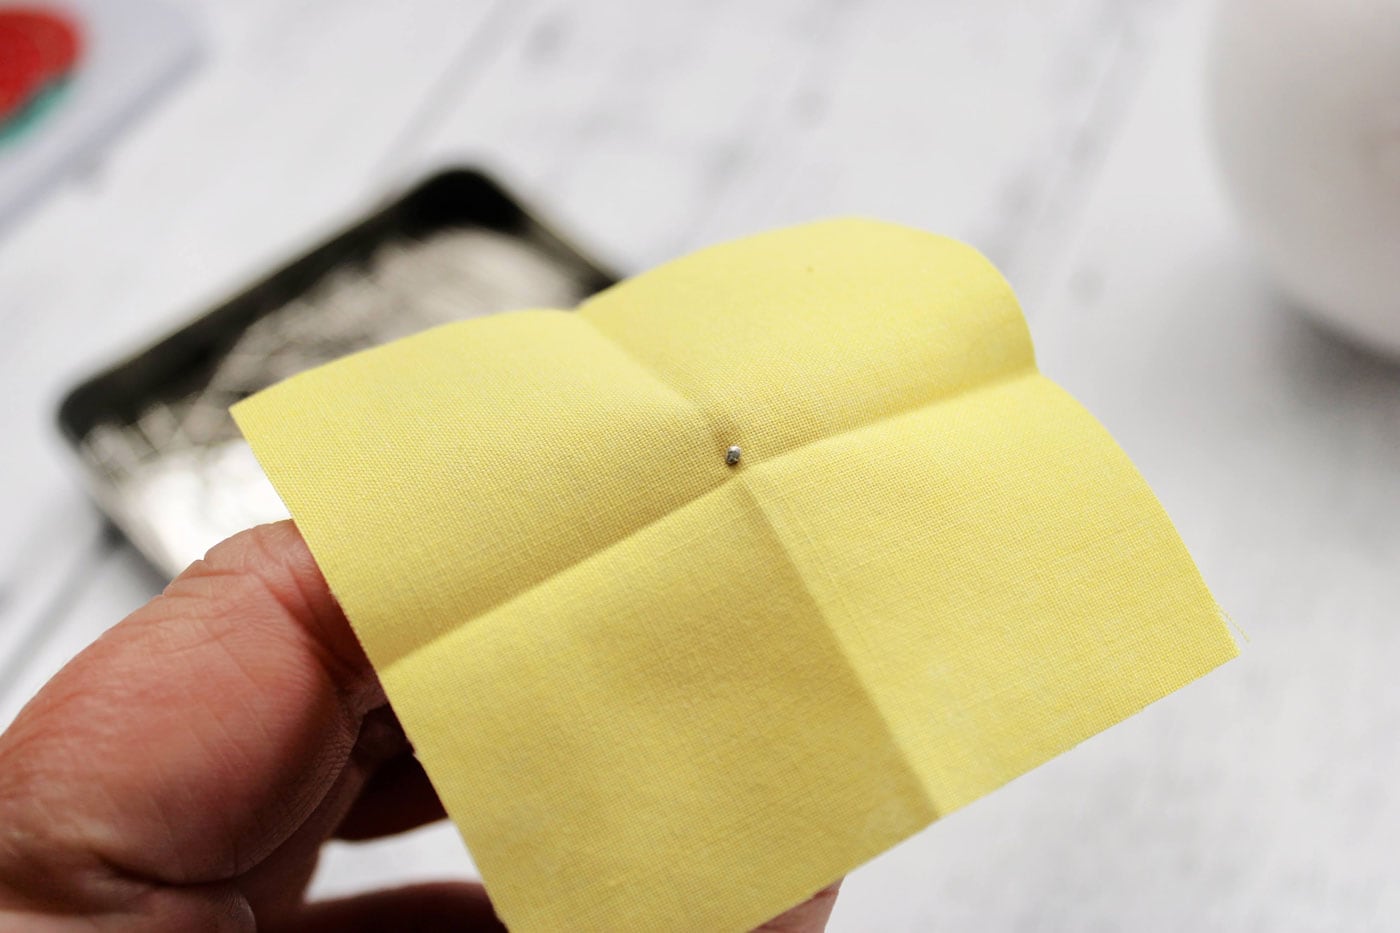 tissu jaune avec des plis, une épingle et une boule de polystyrène blanche